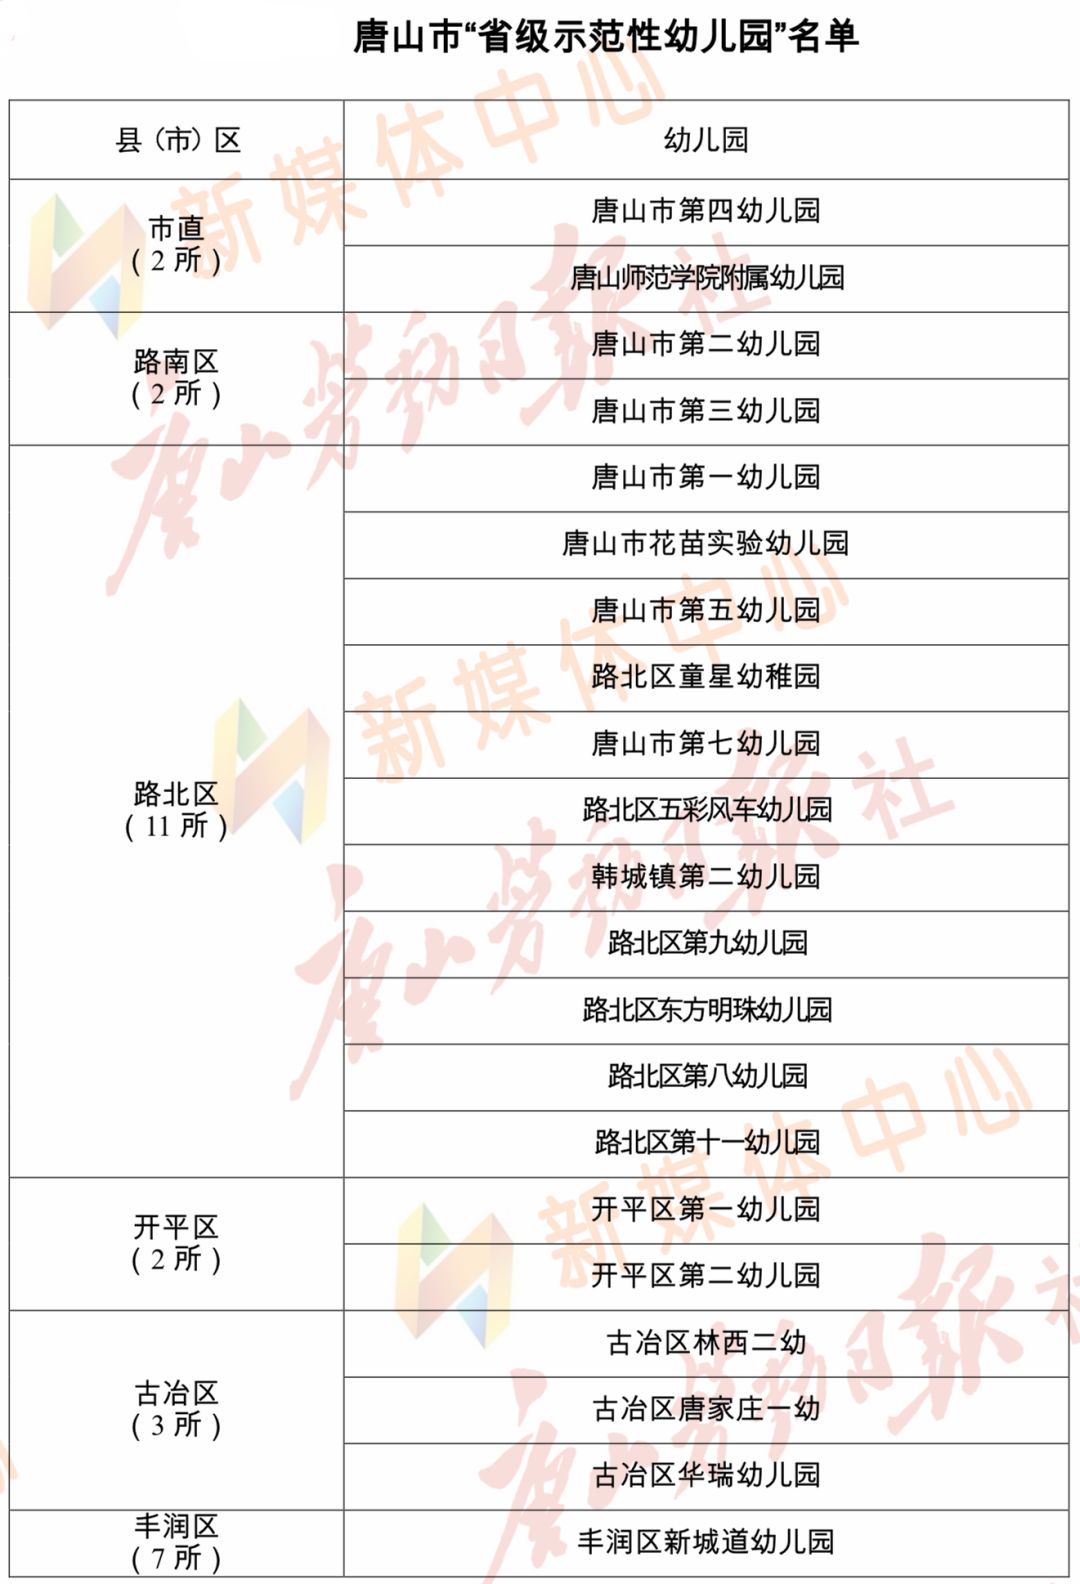 唐山市"省级示范性幼儿园" 名单